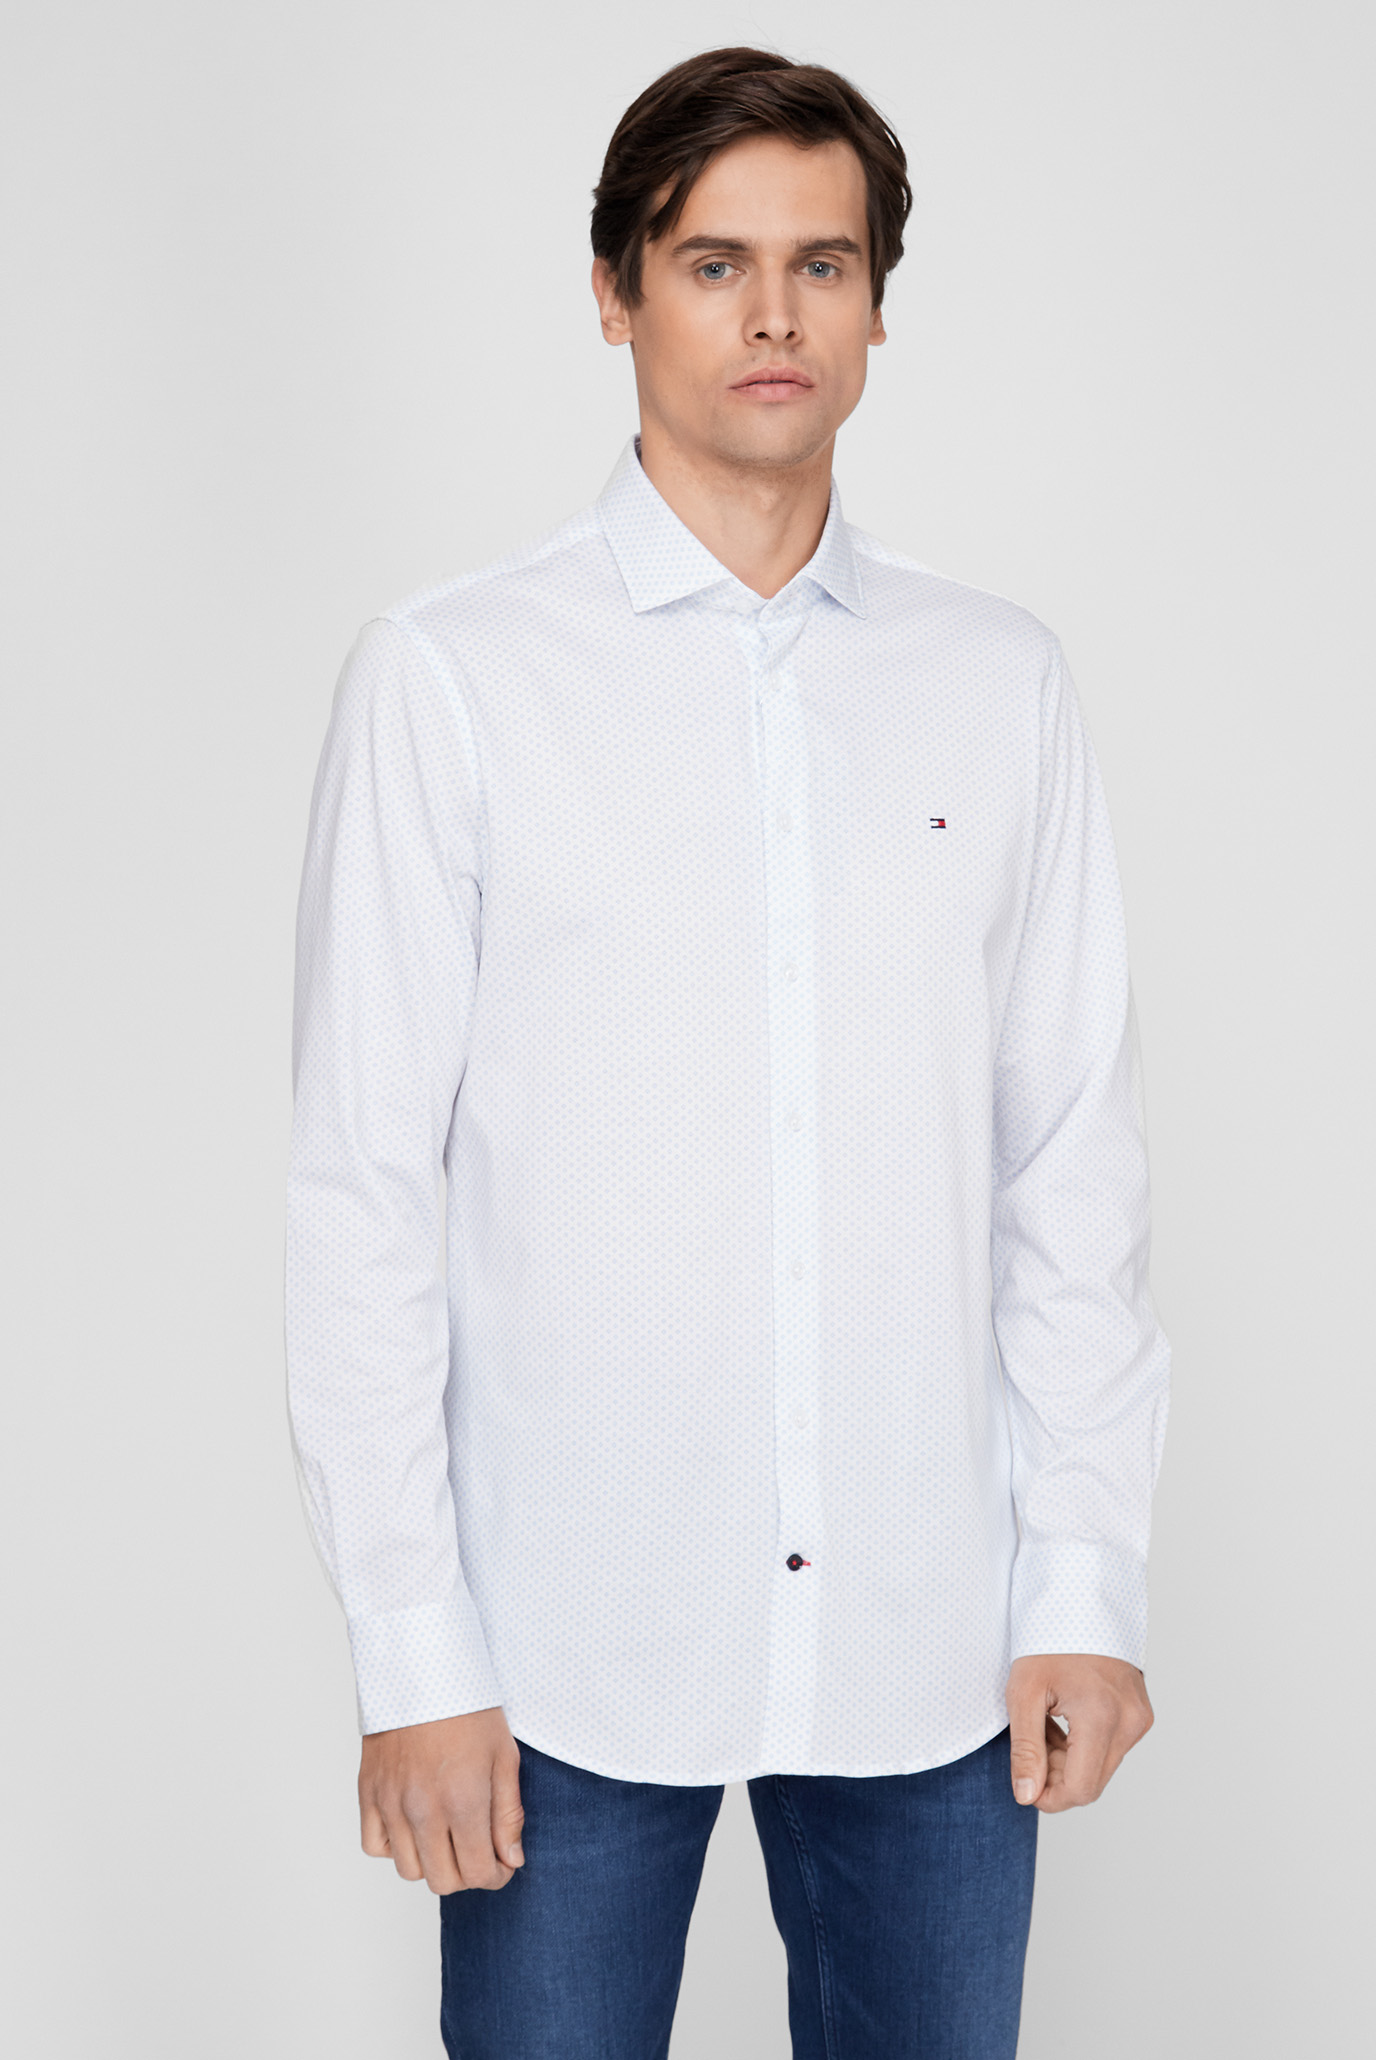 Мужская белая рубашка с узором CL JERSEY 1